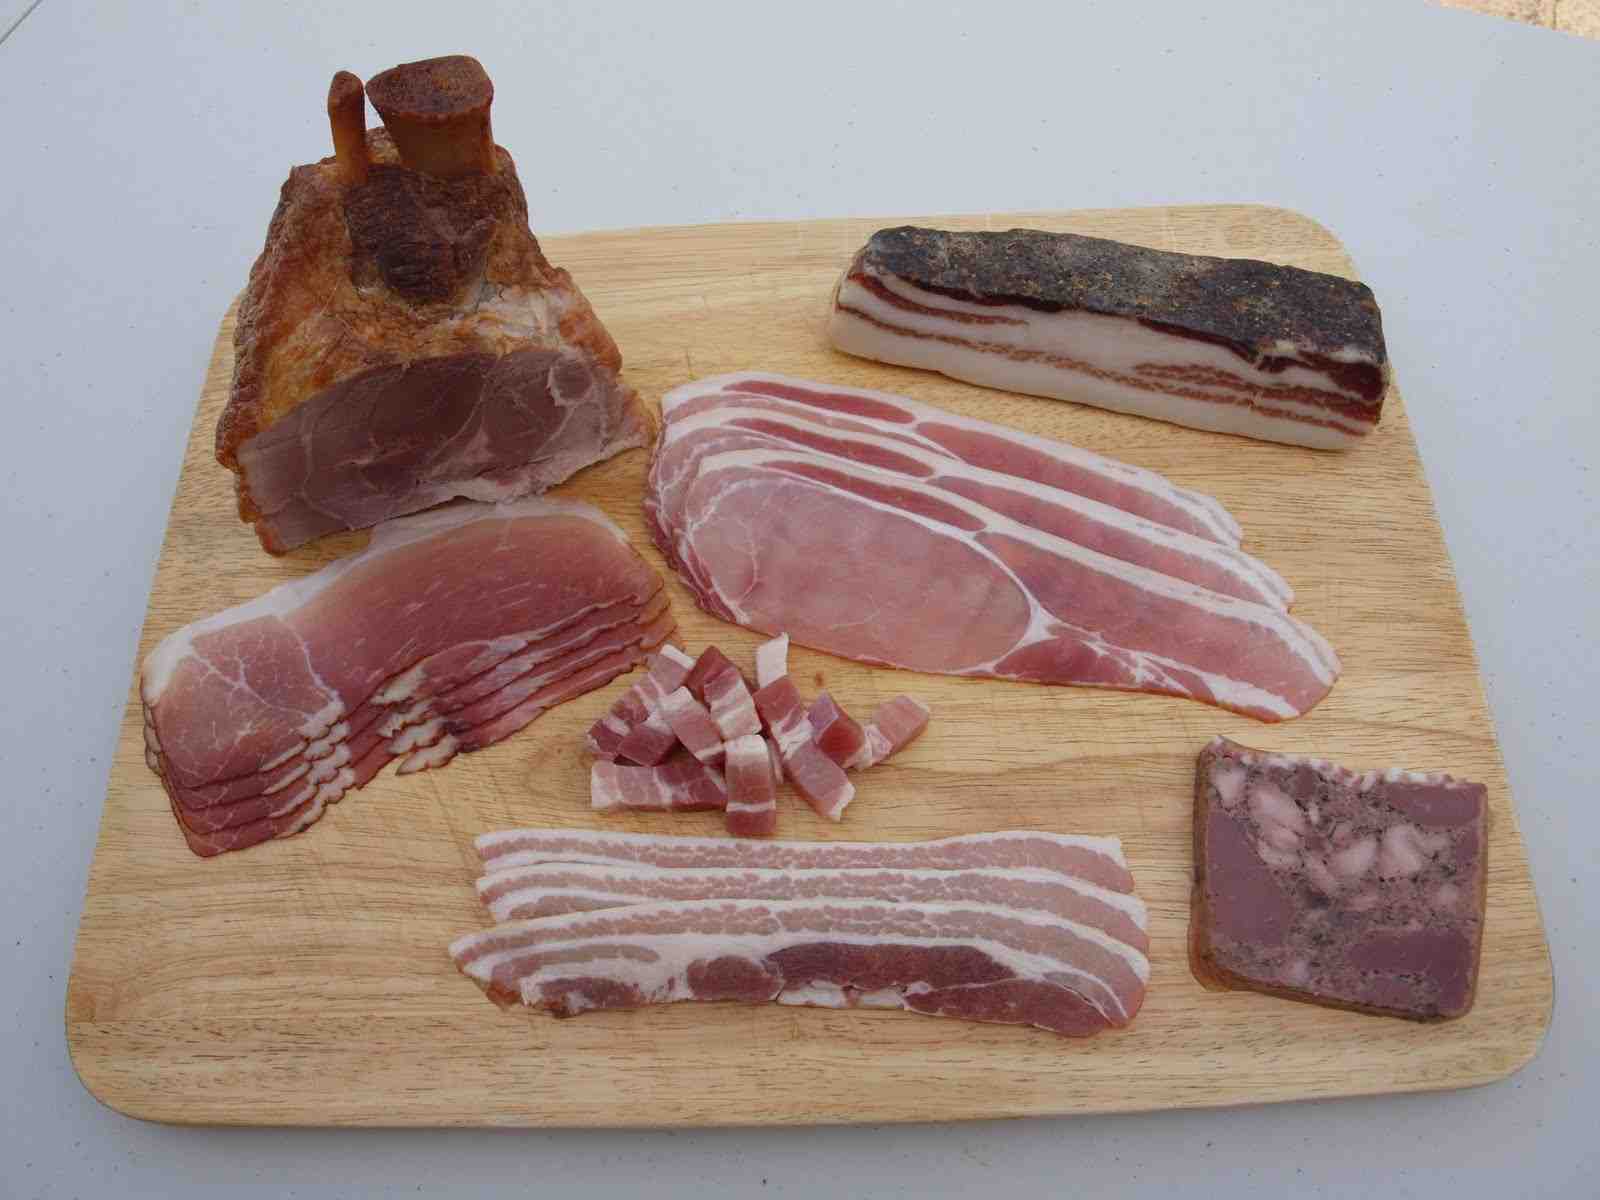 Is a fresh ham the same as a pork roast?